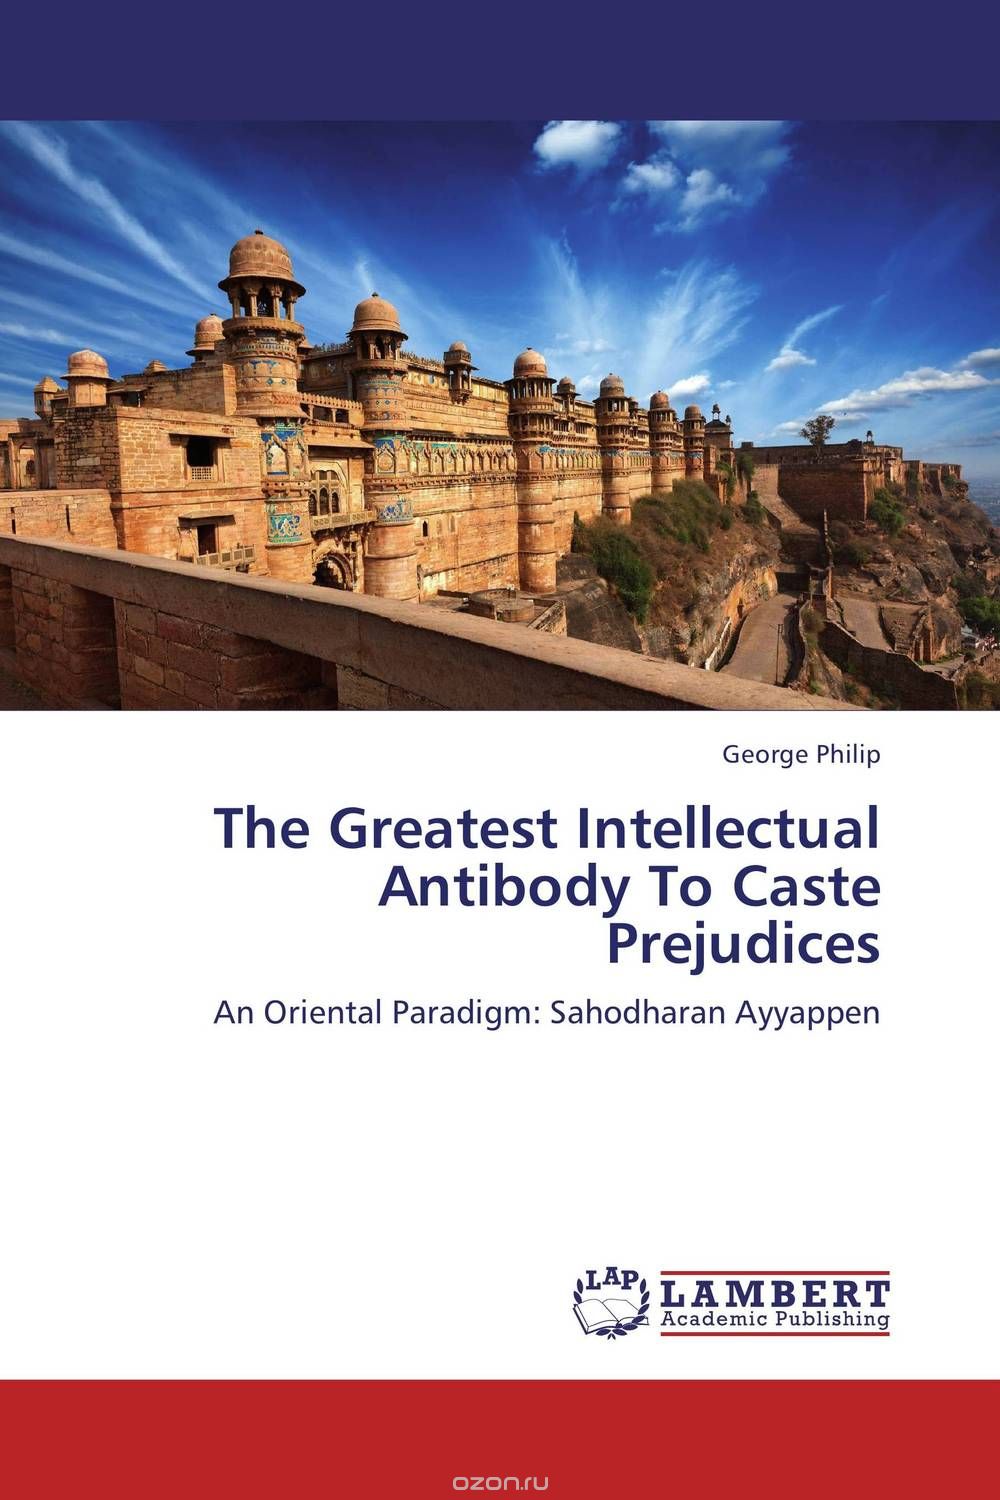 Скачать книгу "The Greatest Intellectual Antibody To Caste Prejudices"